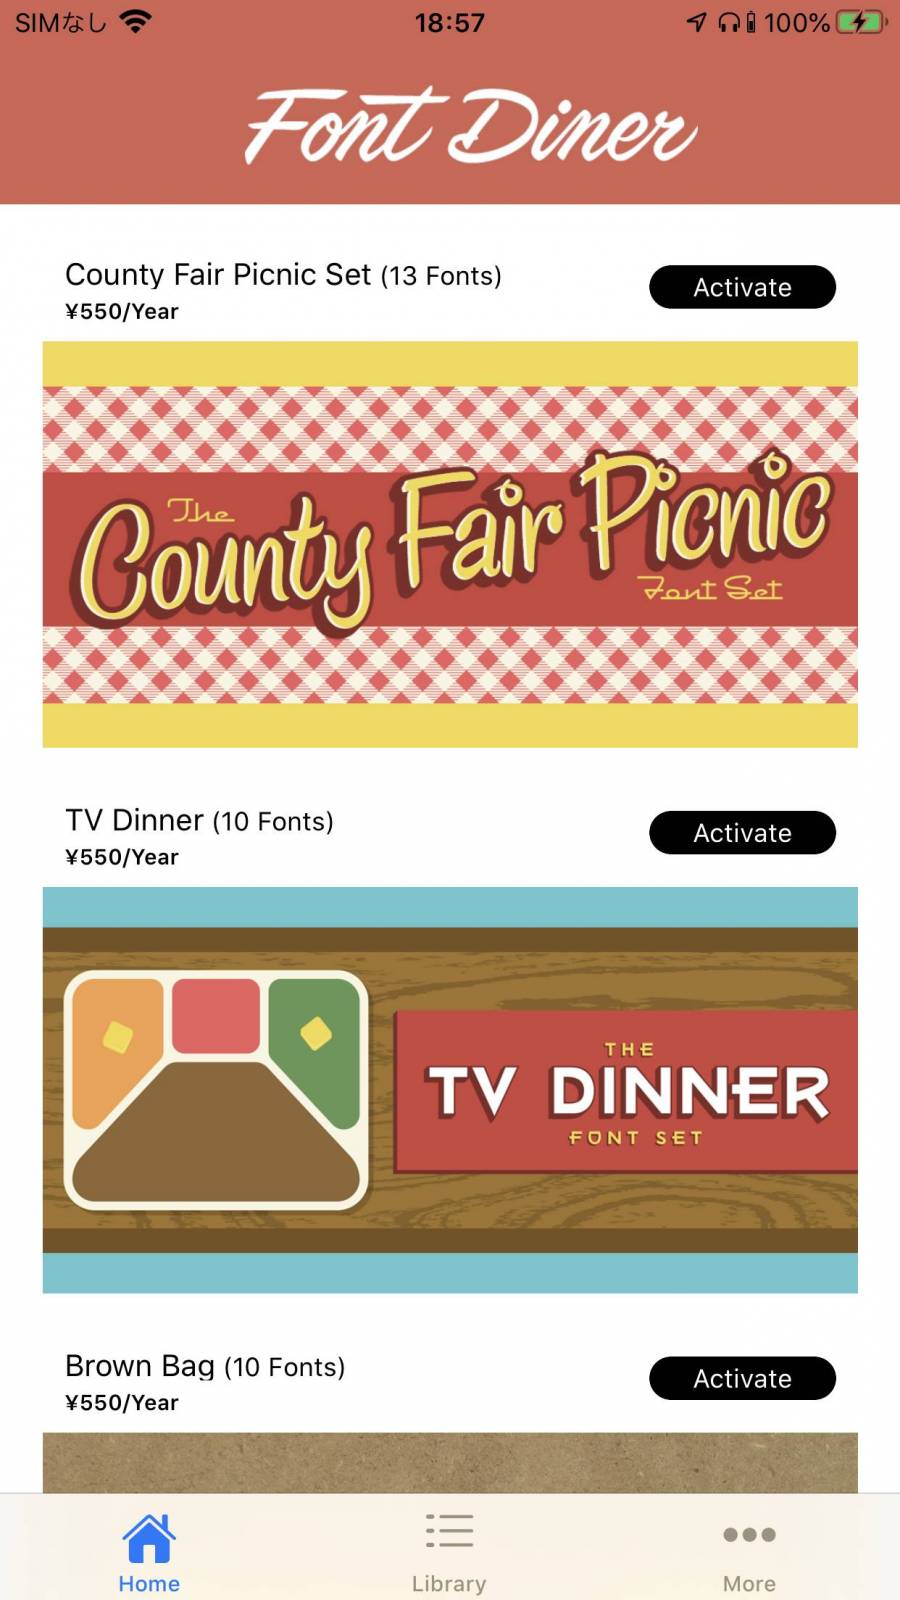 『Font Diner』カテゴリー選択画面